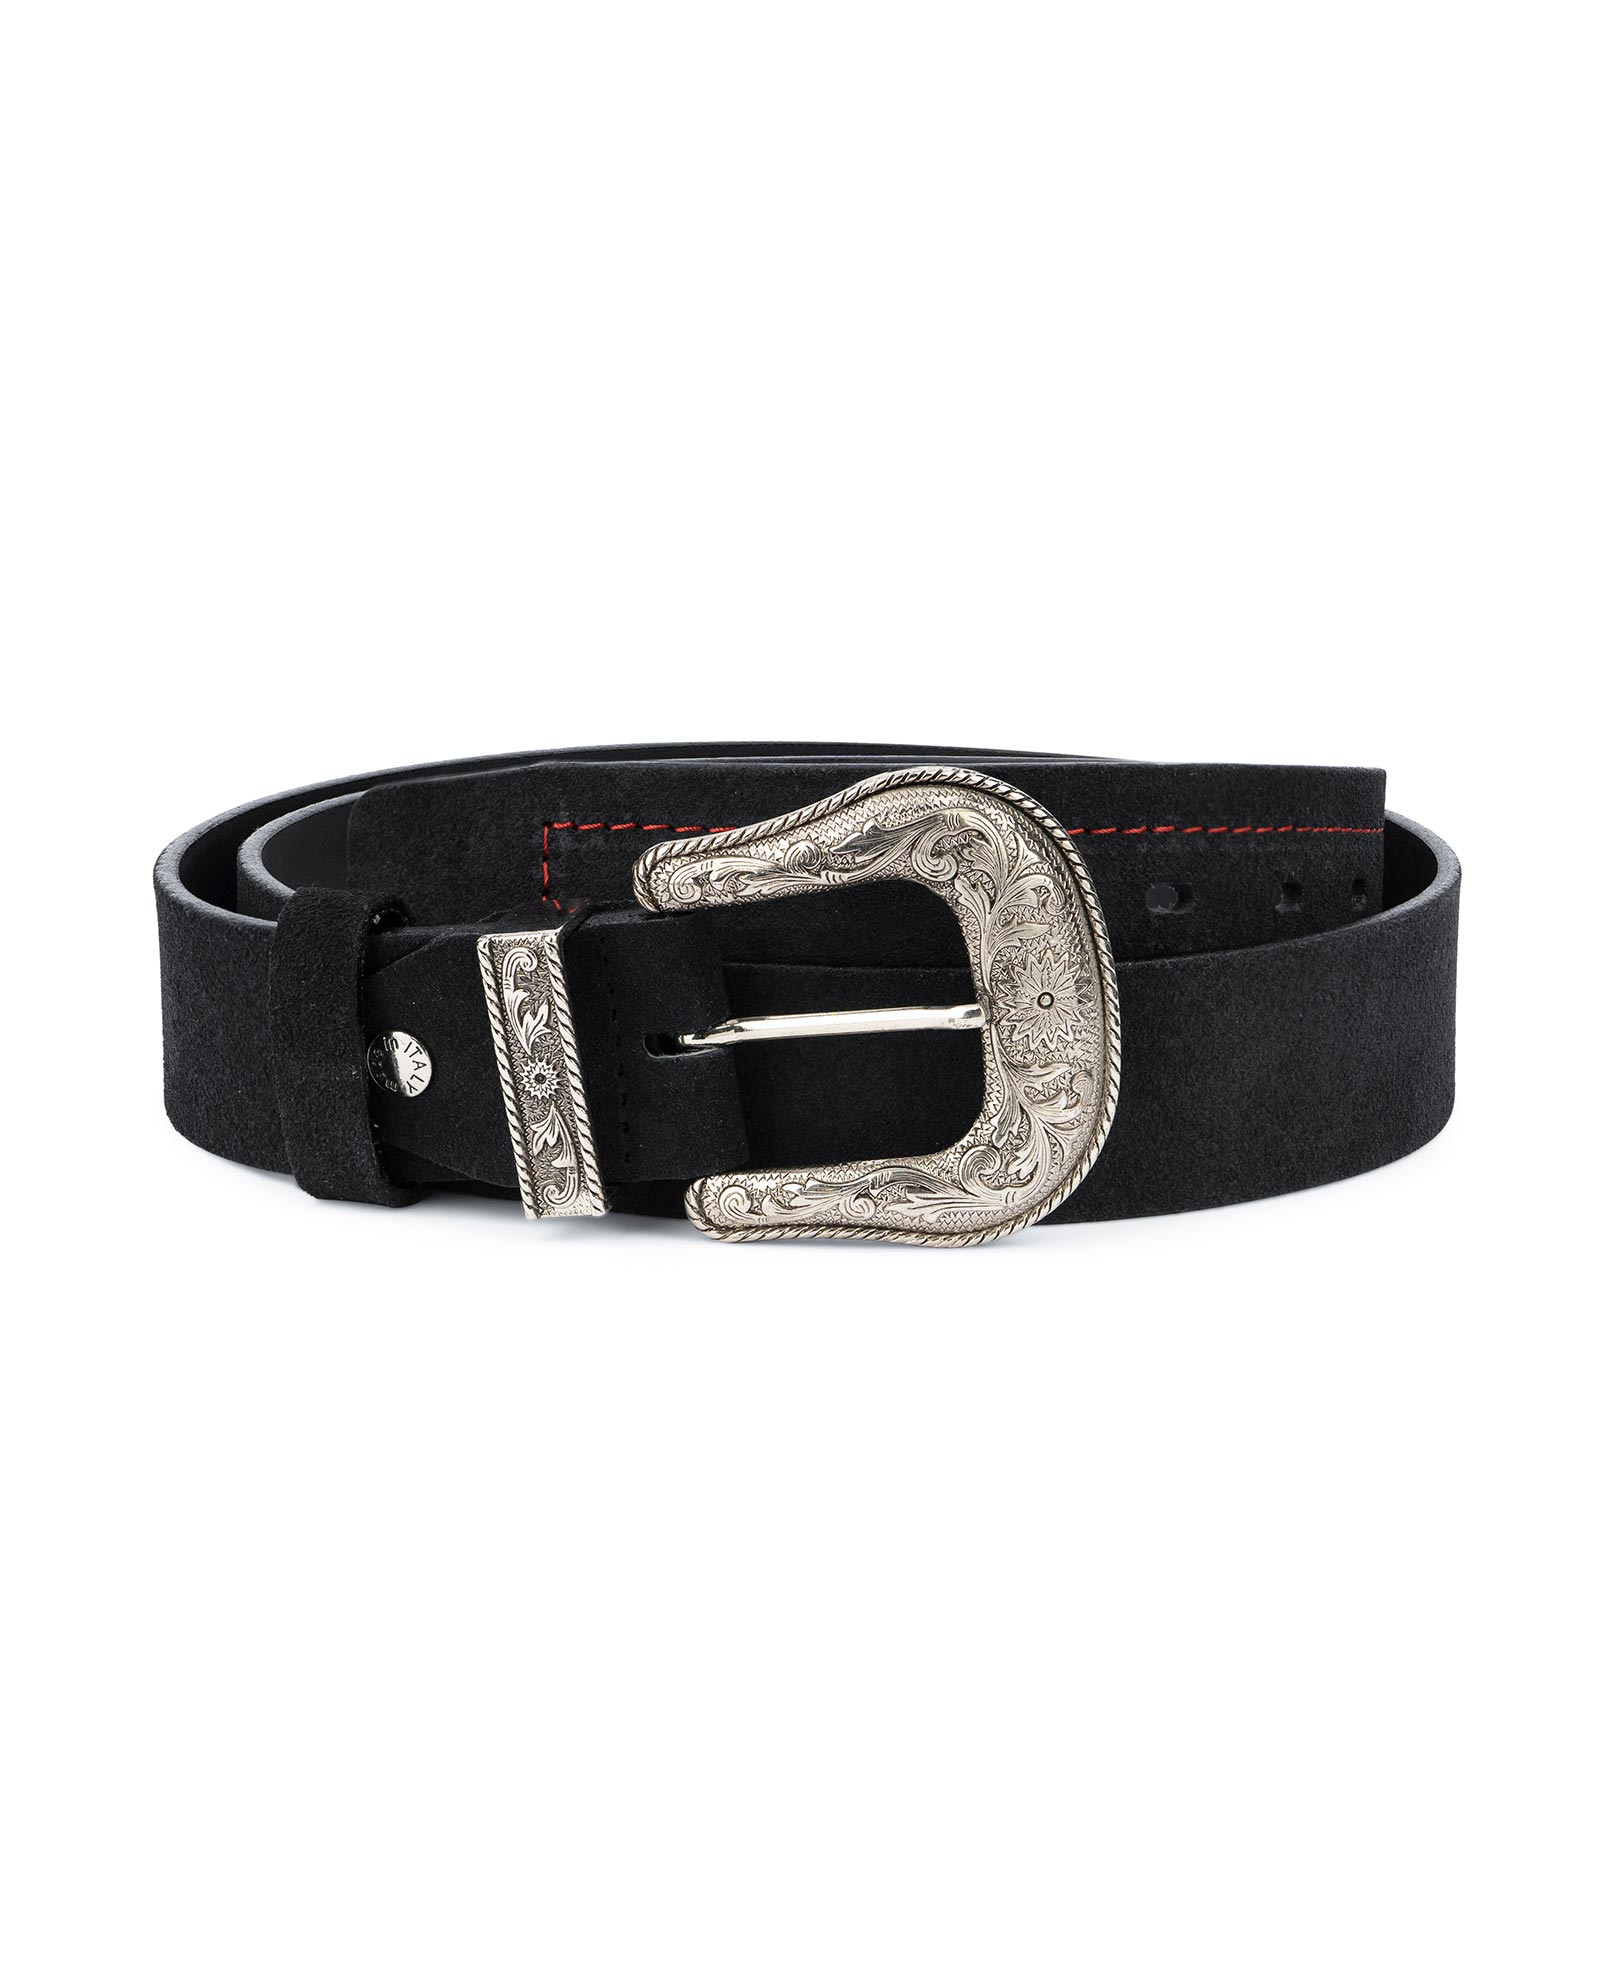 Buy Black Cowboy Belt for Men | Suede Leather | LeatherBeltsOnline.com